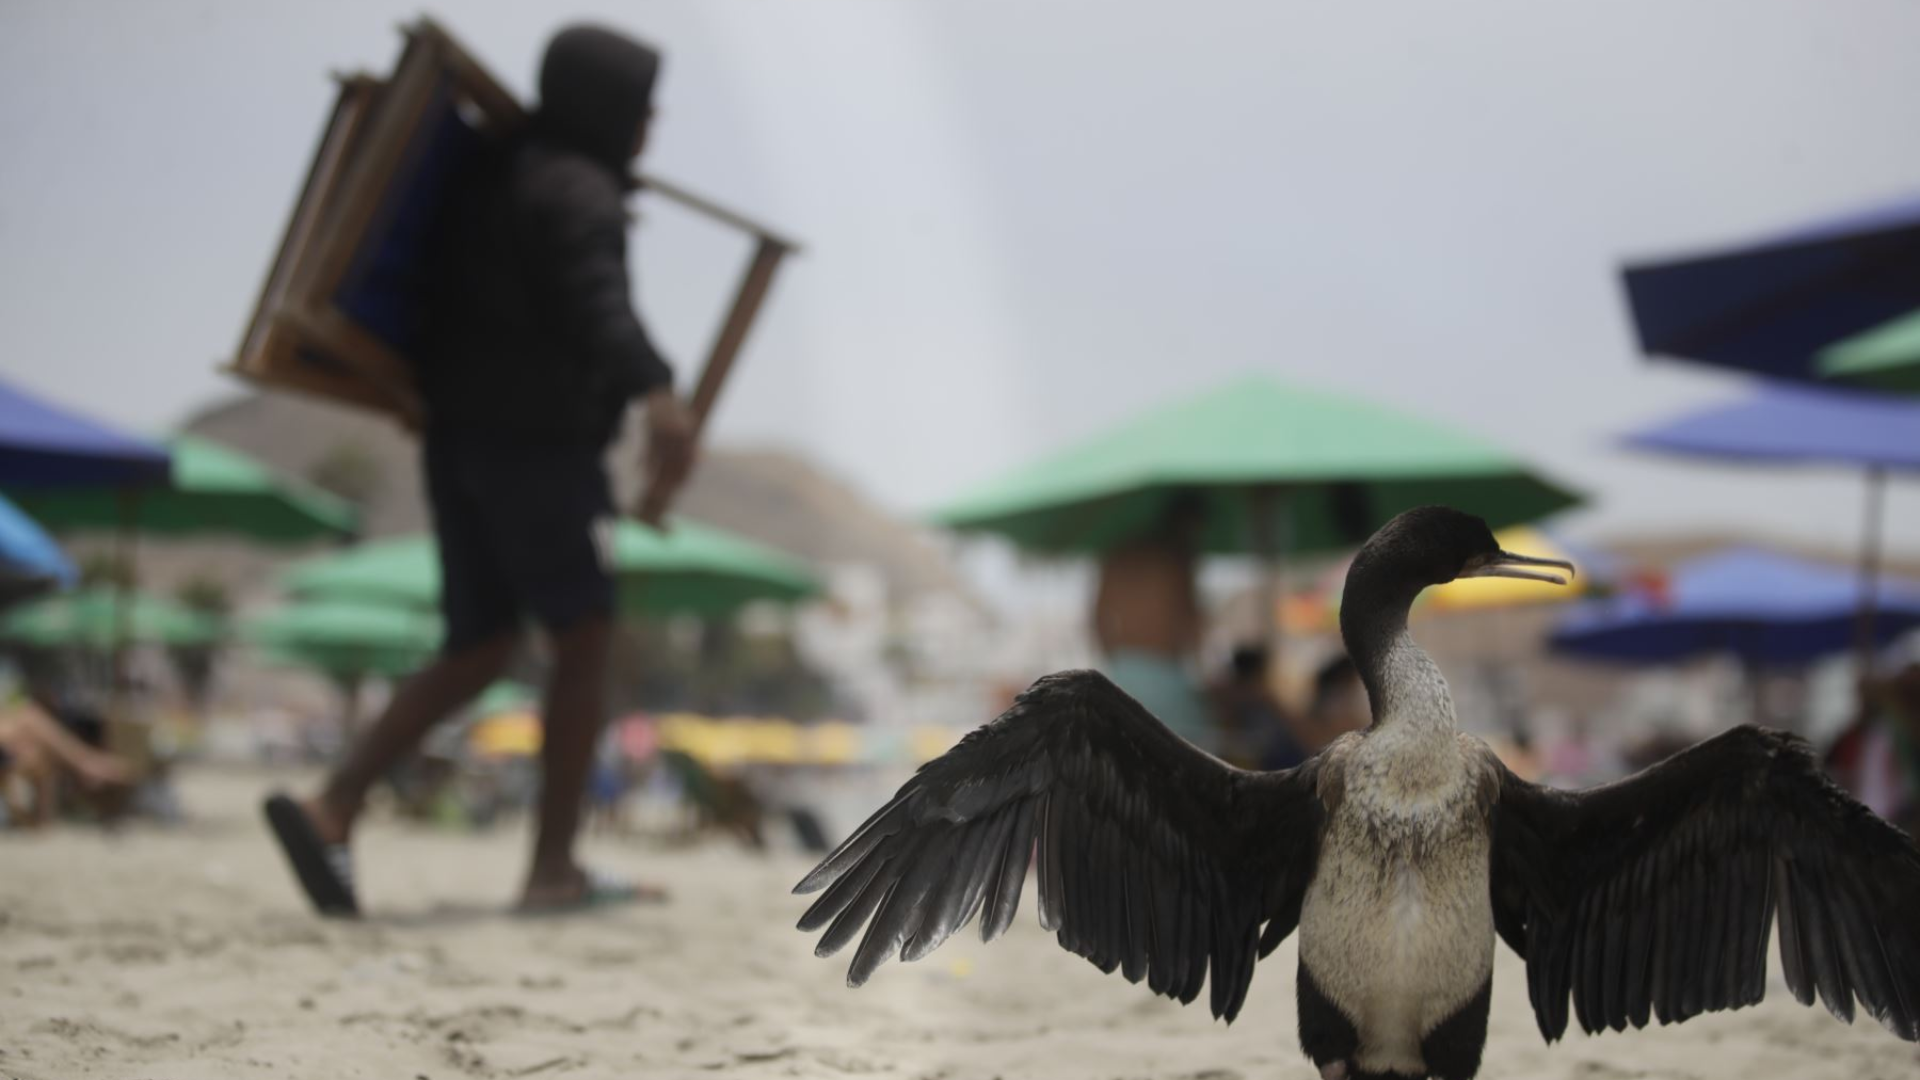 Gripe aviar en humanos debe preocupar, pero no entrar en pánico, asegura epidemiólogo.
Foto: Andina